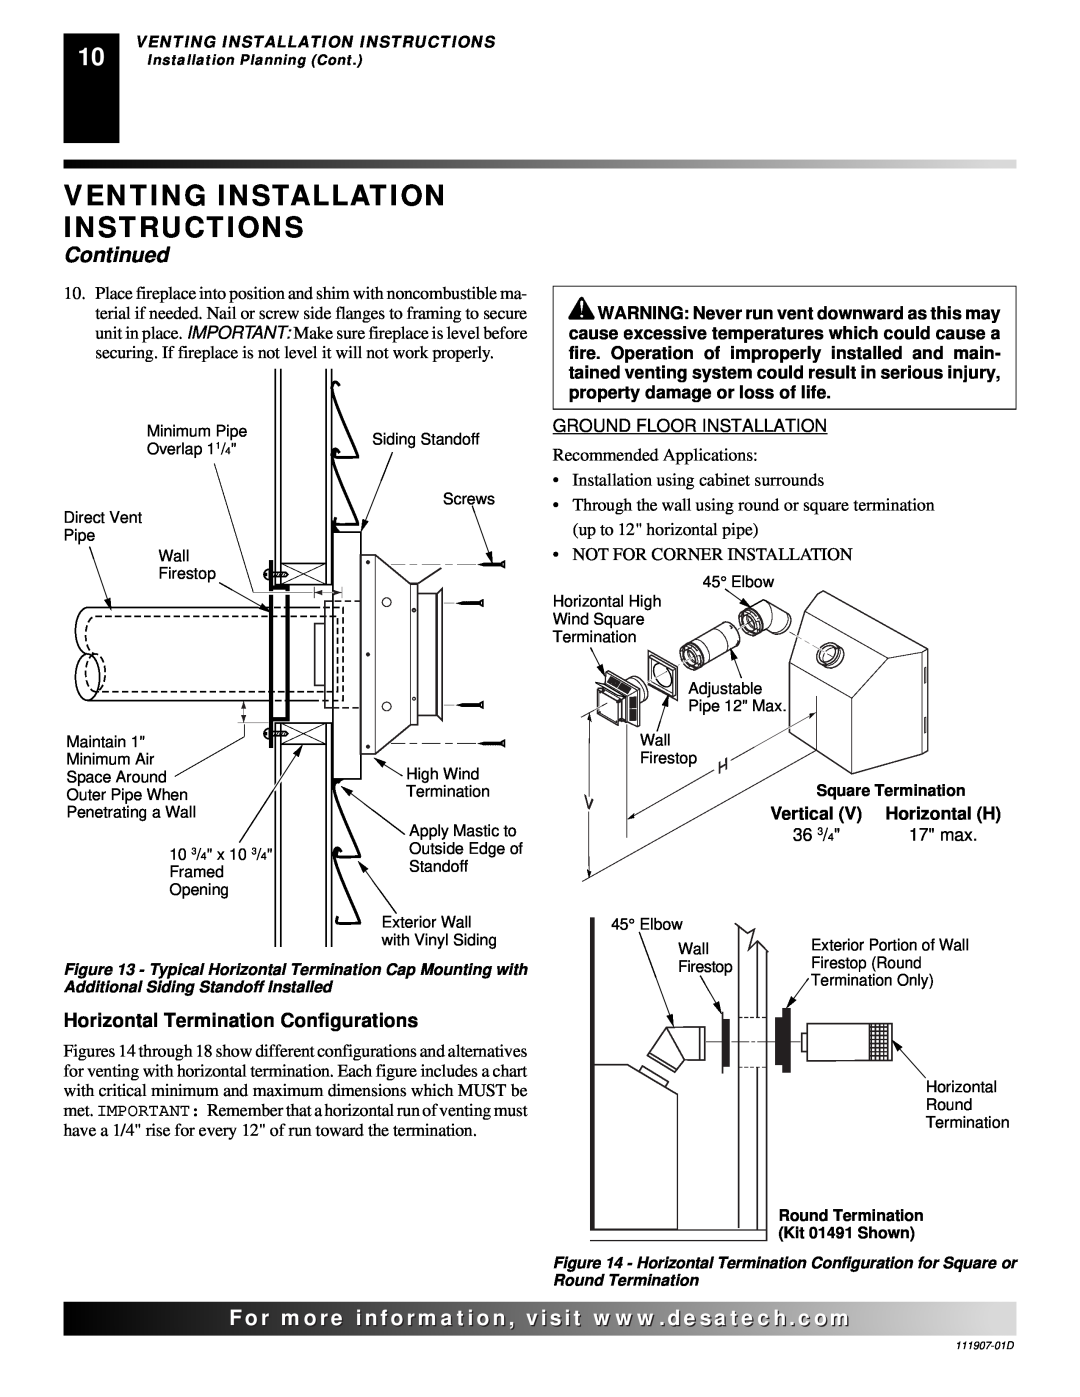 Desa V42EN-A, VV42ENB(1) Venting Installation Instructions, Continued, For..com, Horizontal Termination Configurations 